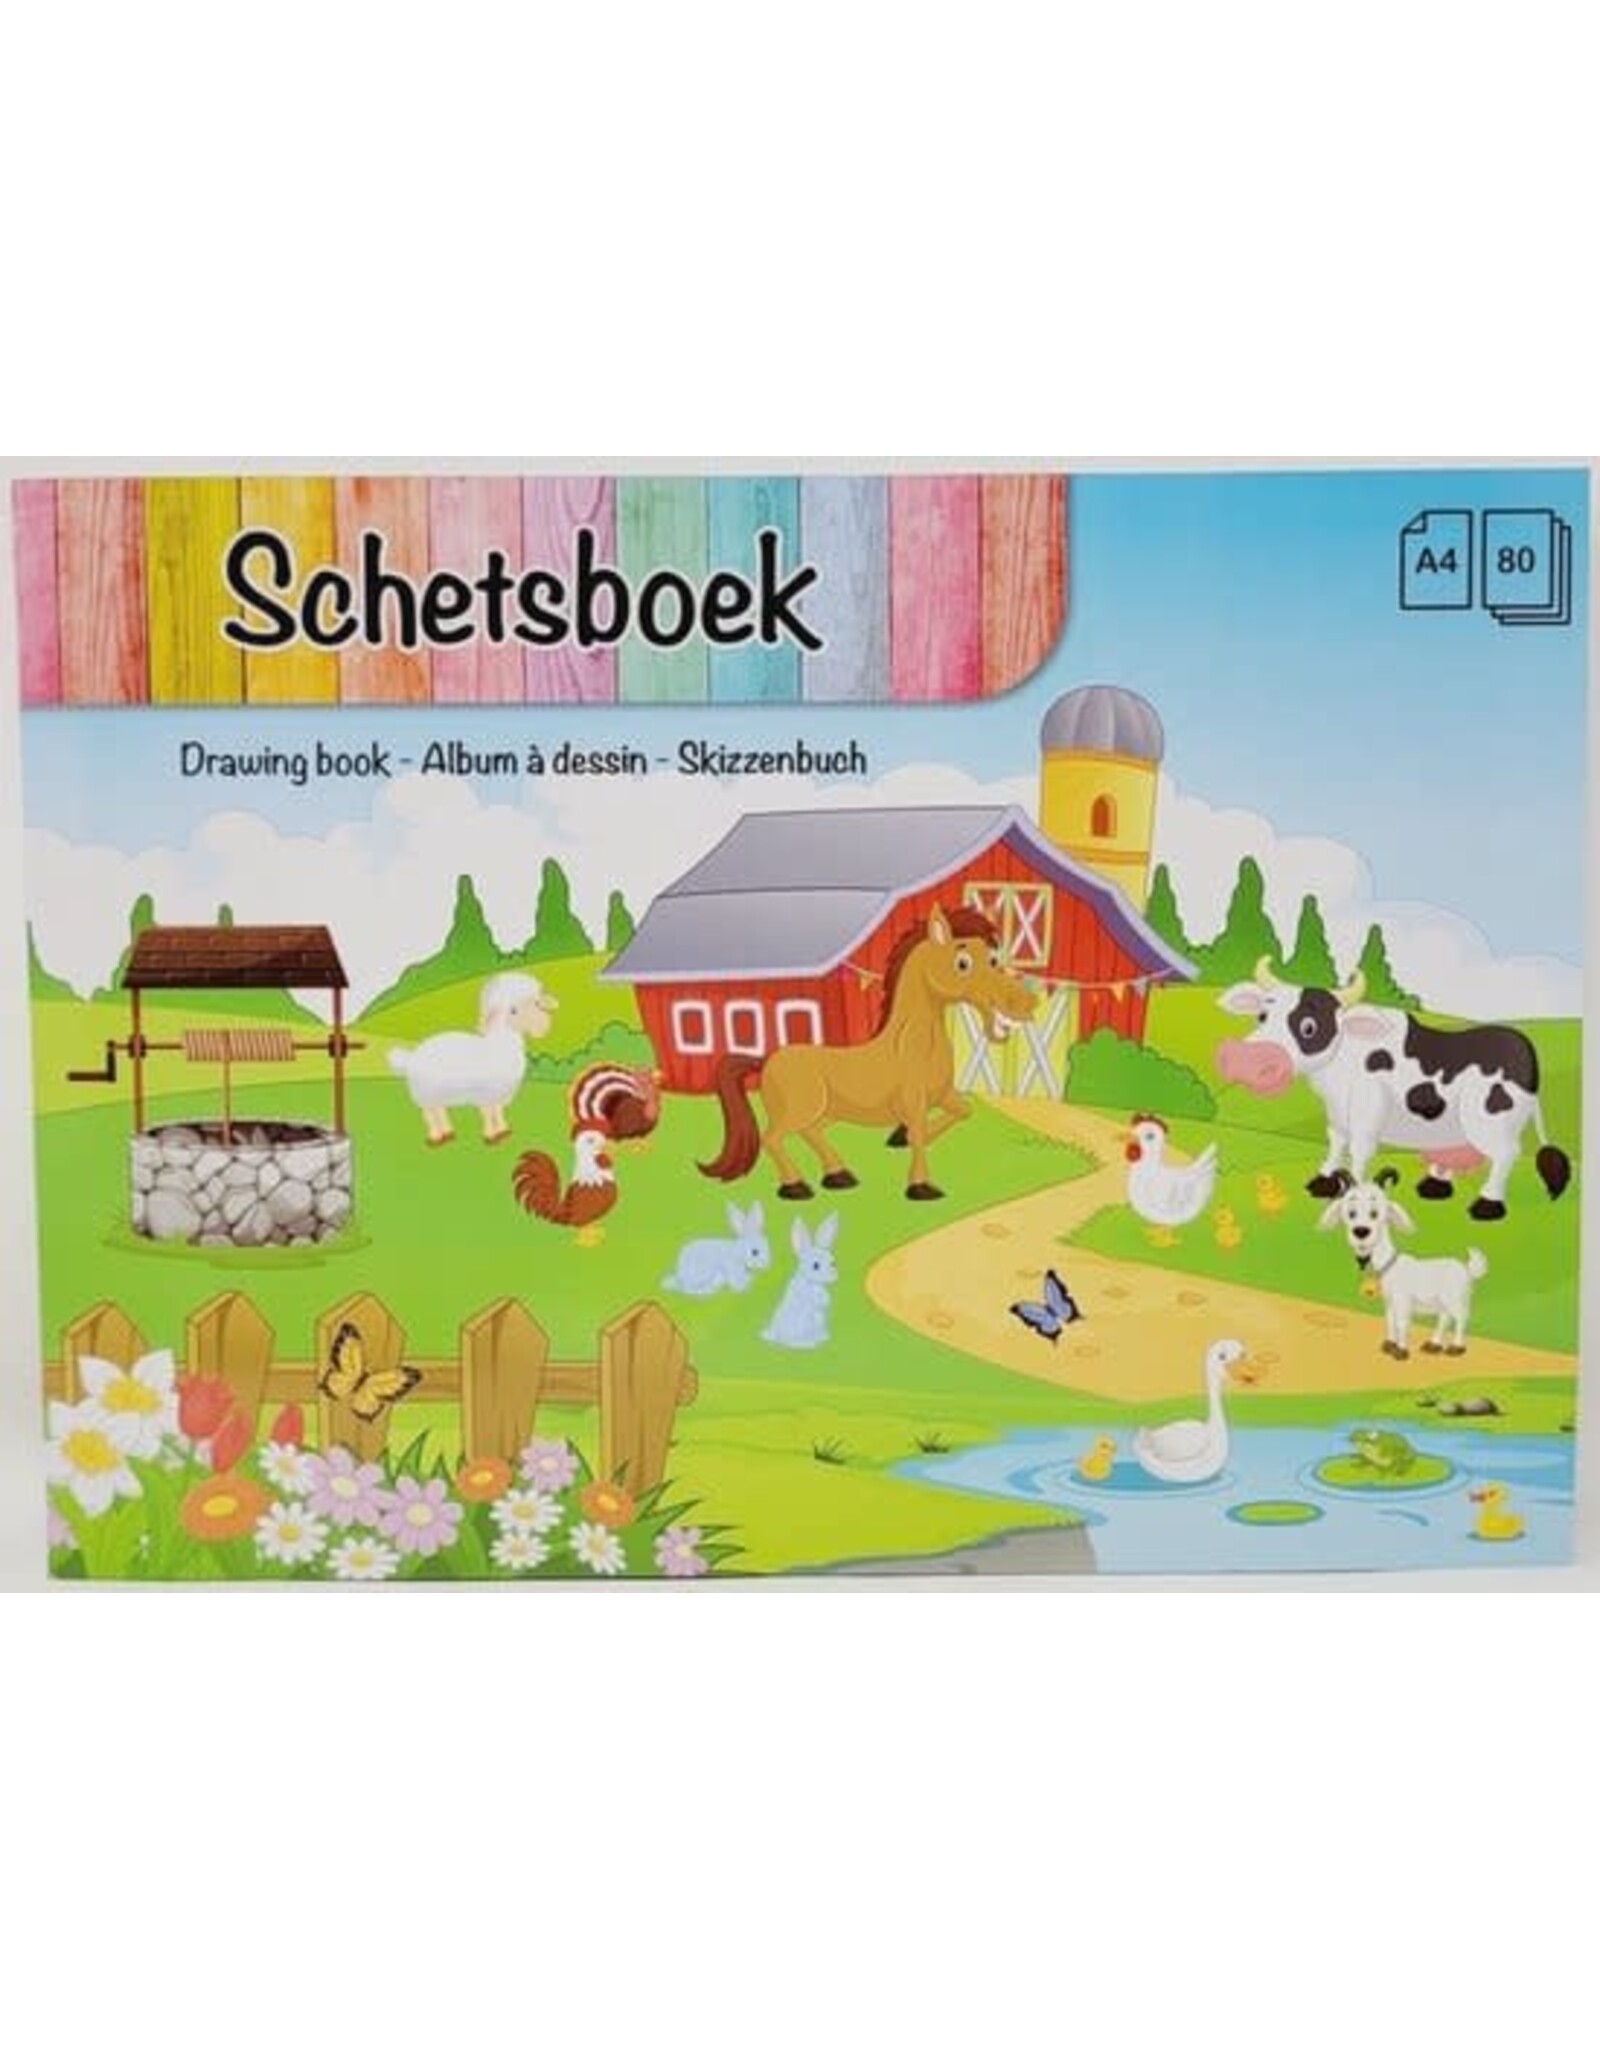 Dutch Crafts Dutch Crafts - Schetsboek - Schetsboek voor kinderen - Boerderij met dieren kaft